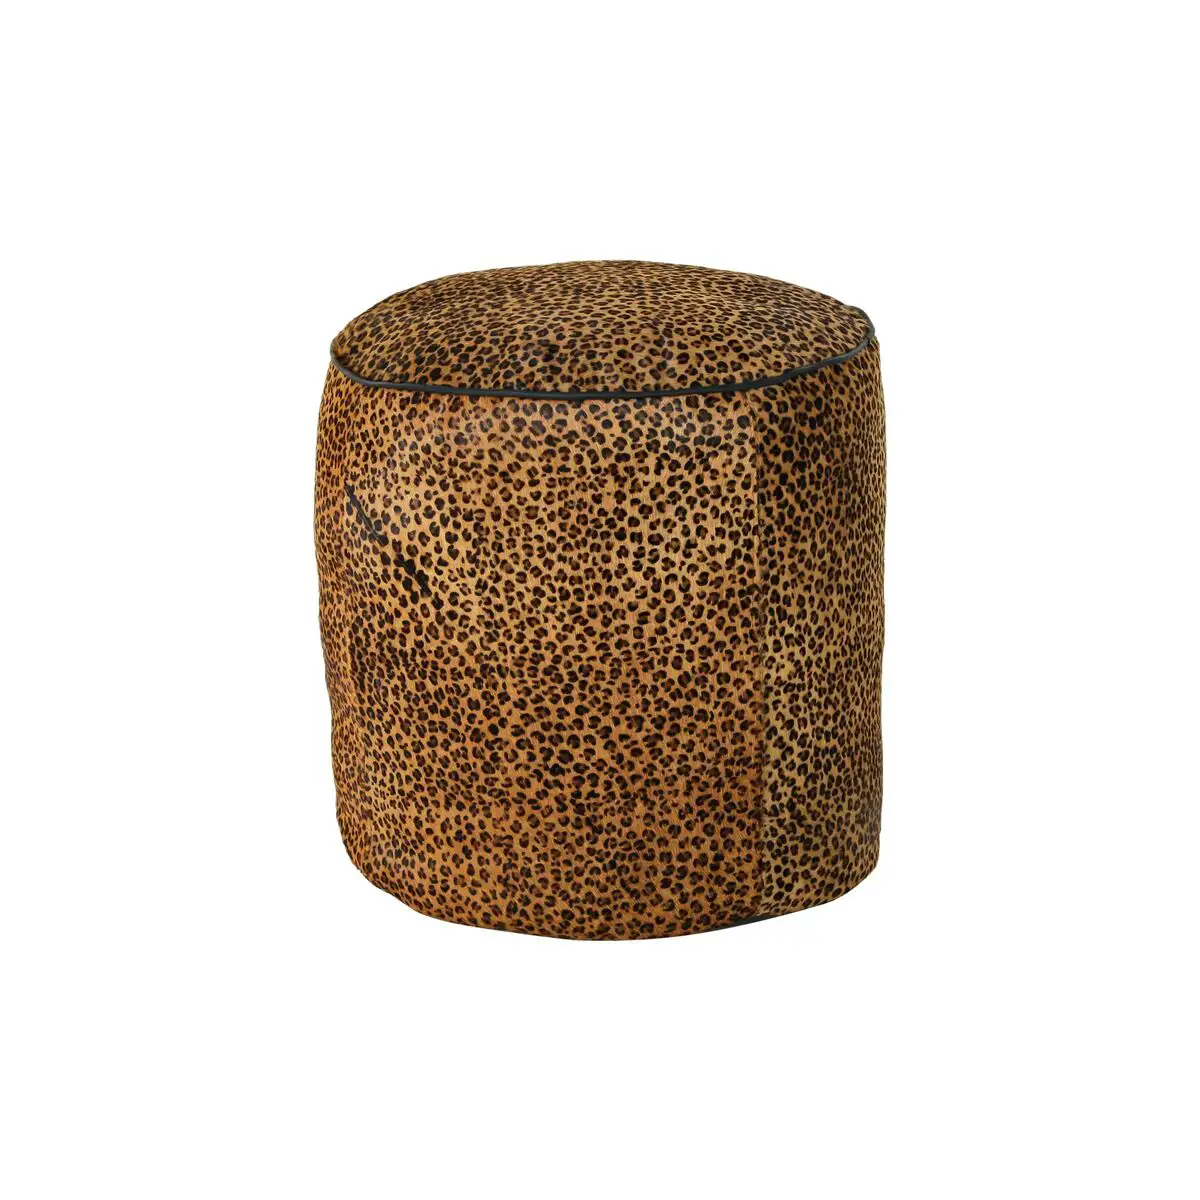 Repose pied dkd home decor 46 x 46 x 50 cm noir marron leopard colonial_4274. DIAYTAR SENEGAL - Votre Destination pour un Shopping Éclairé. Parcourez notre boutique en ligne pour découvrir des produits de qualité qui embelliront votre quotidien.